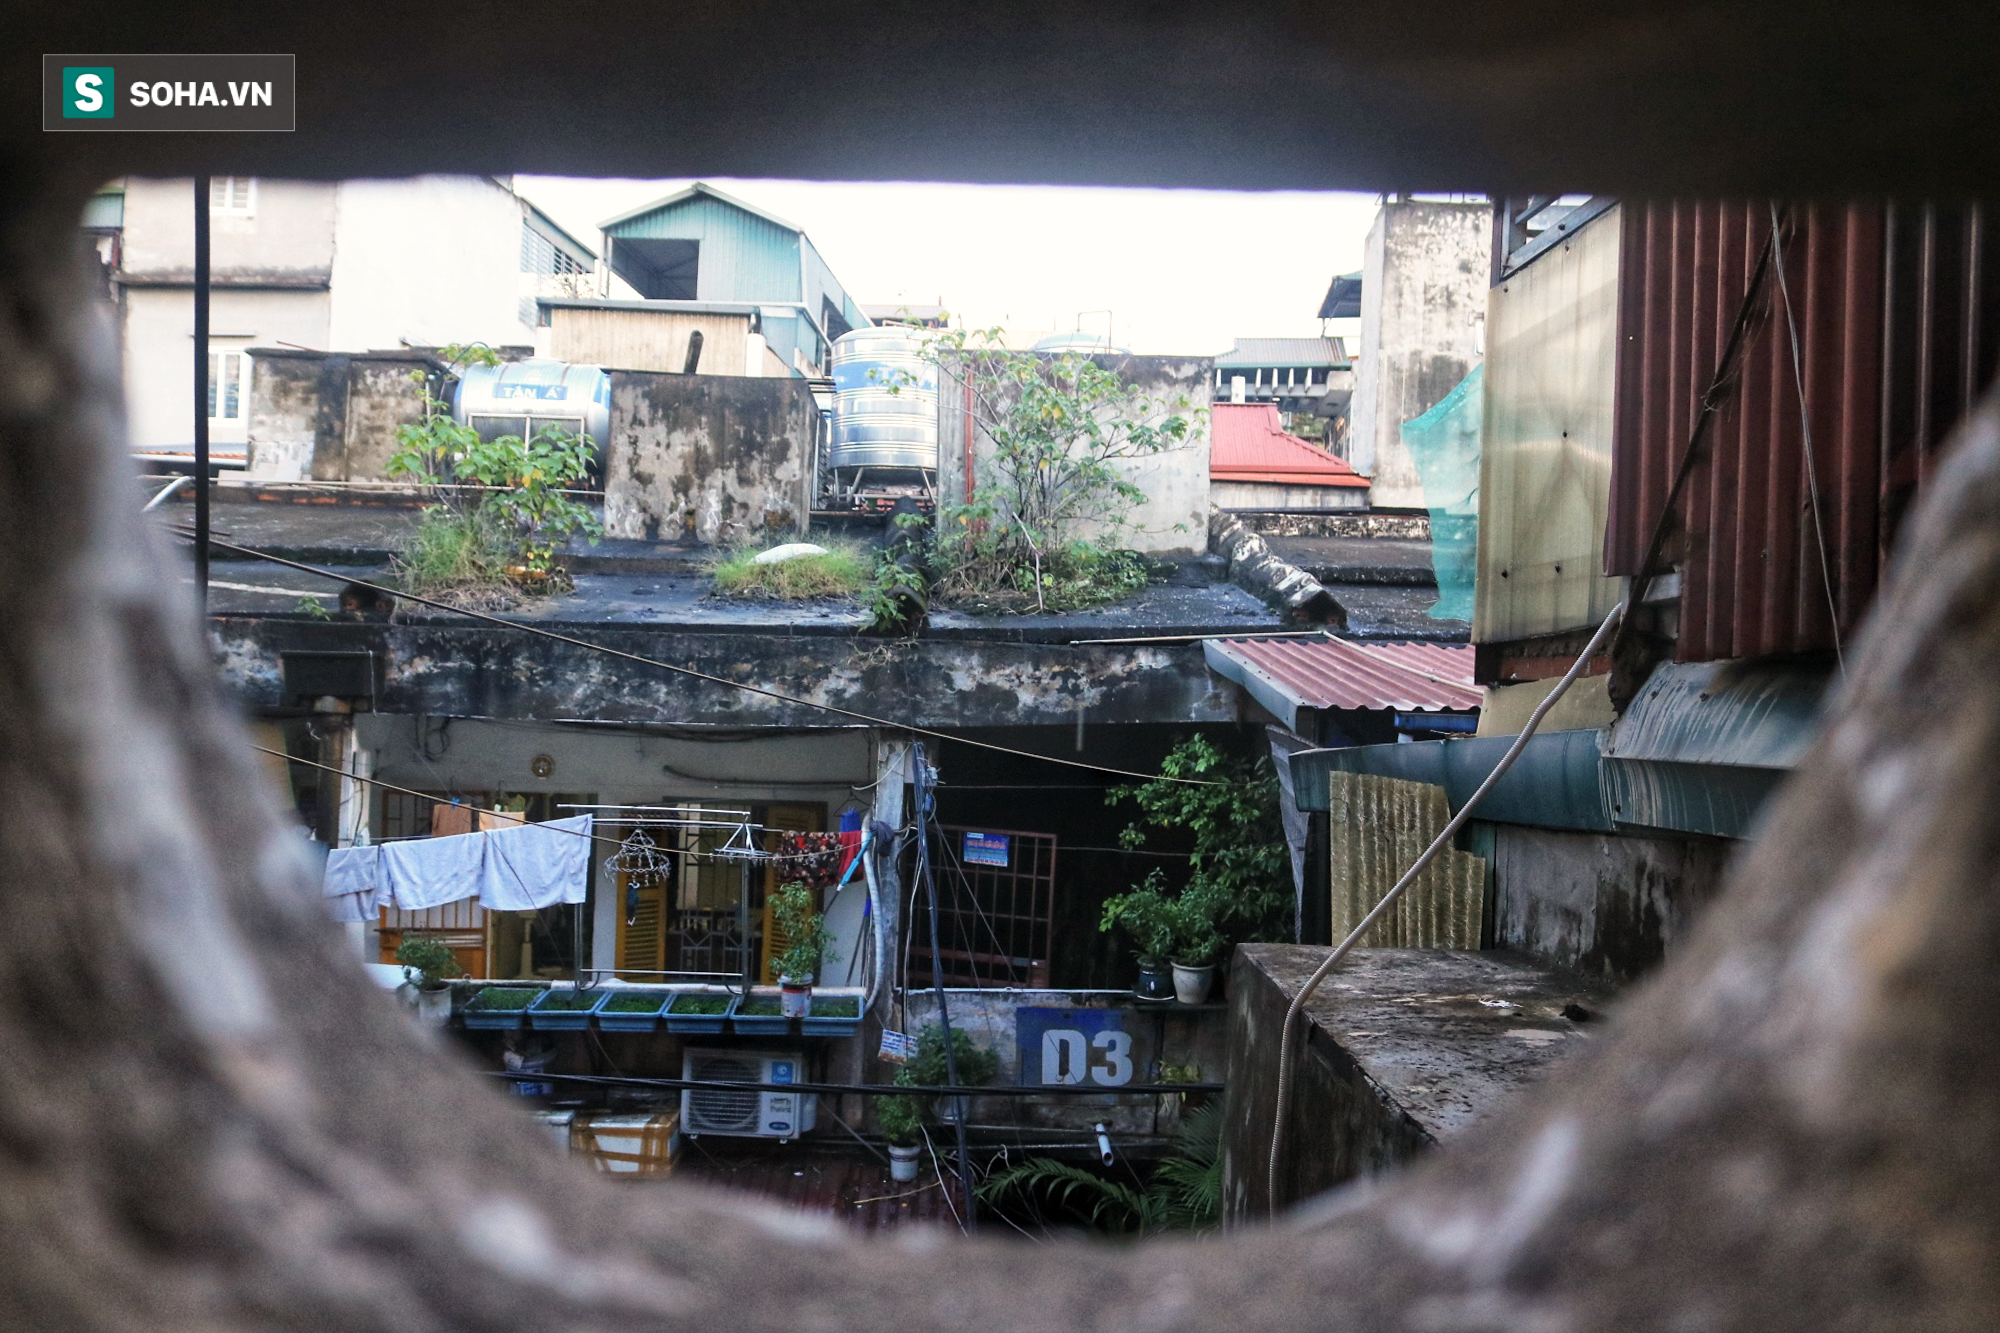 Cận cảnh 4 khu tập thể cấp độ nguy hiểm tại Hà Nội: Lấy chậu hứng nước mưa, đi vệ sinh phải đội nón - Ảnh 8.